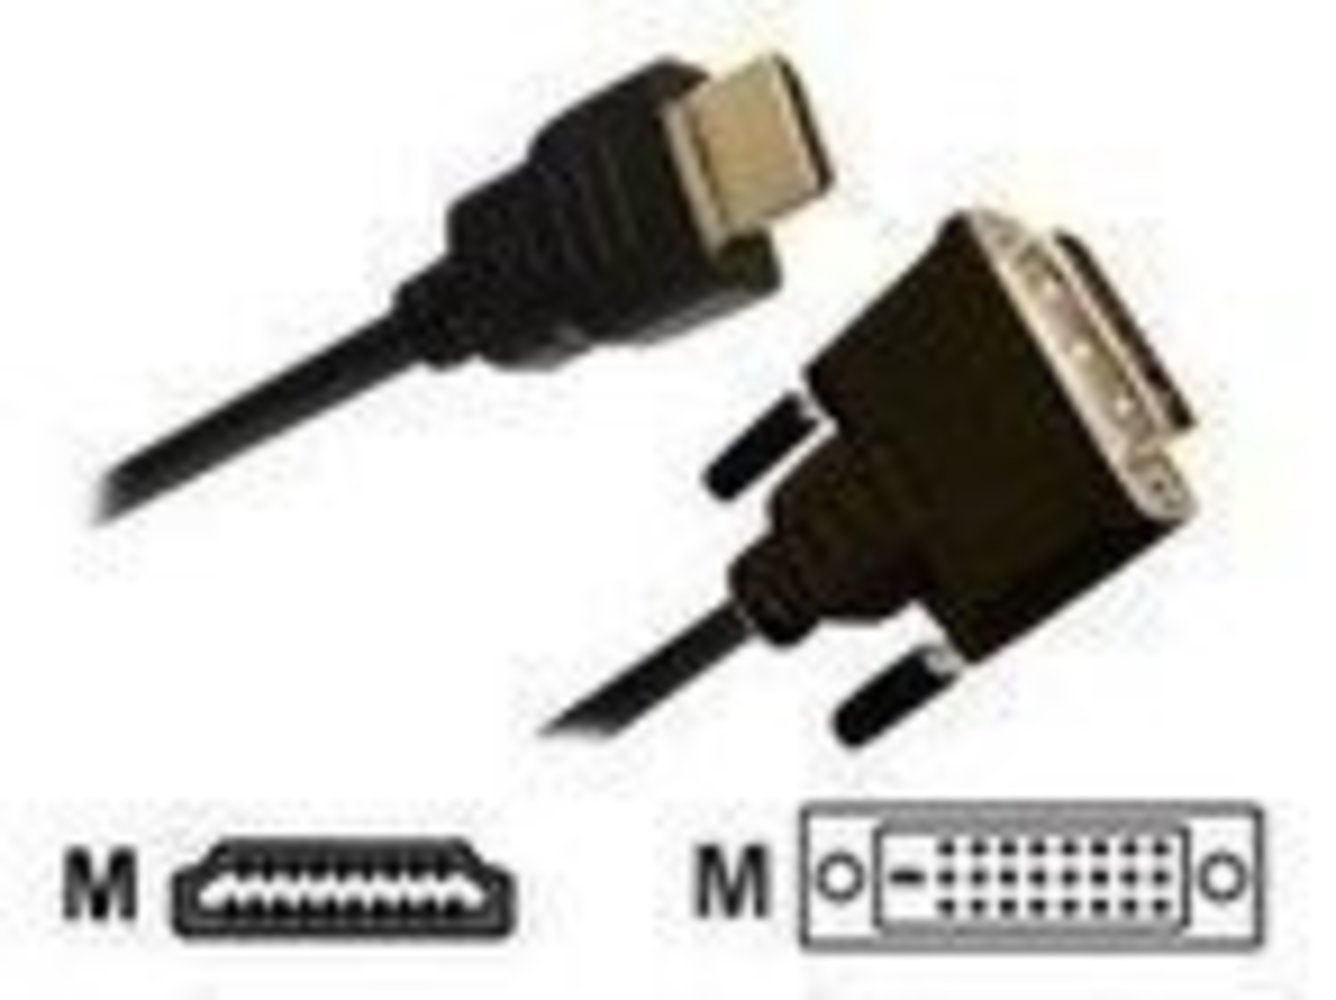 JOUJYE HDMI/DVI-D Adapterkabel 2m - HDMI Stecker A / DVI-D Stecker 18+1 - Vergoldet - Hochdichte 3-fach Abschirmung - HDCP Konform